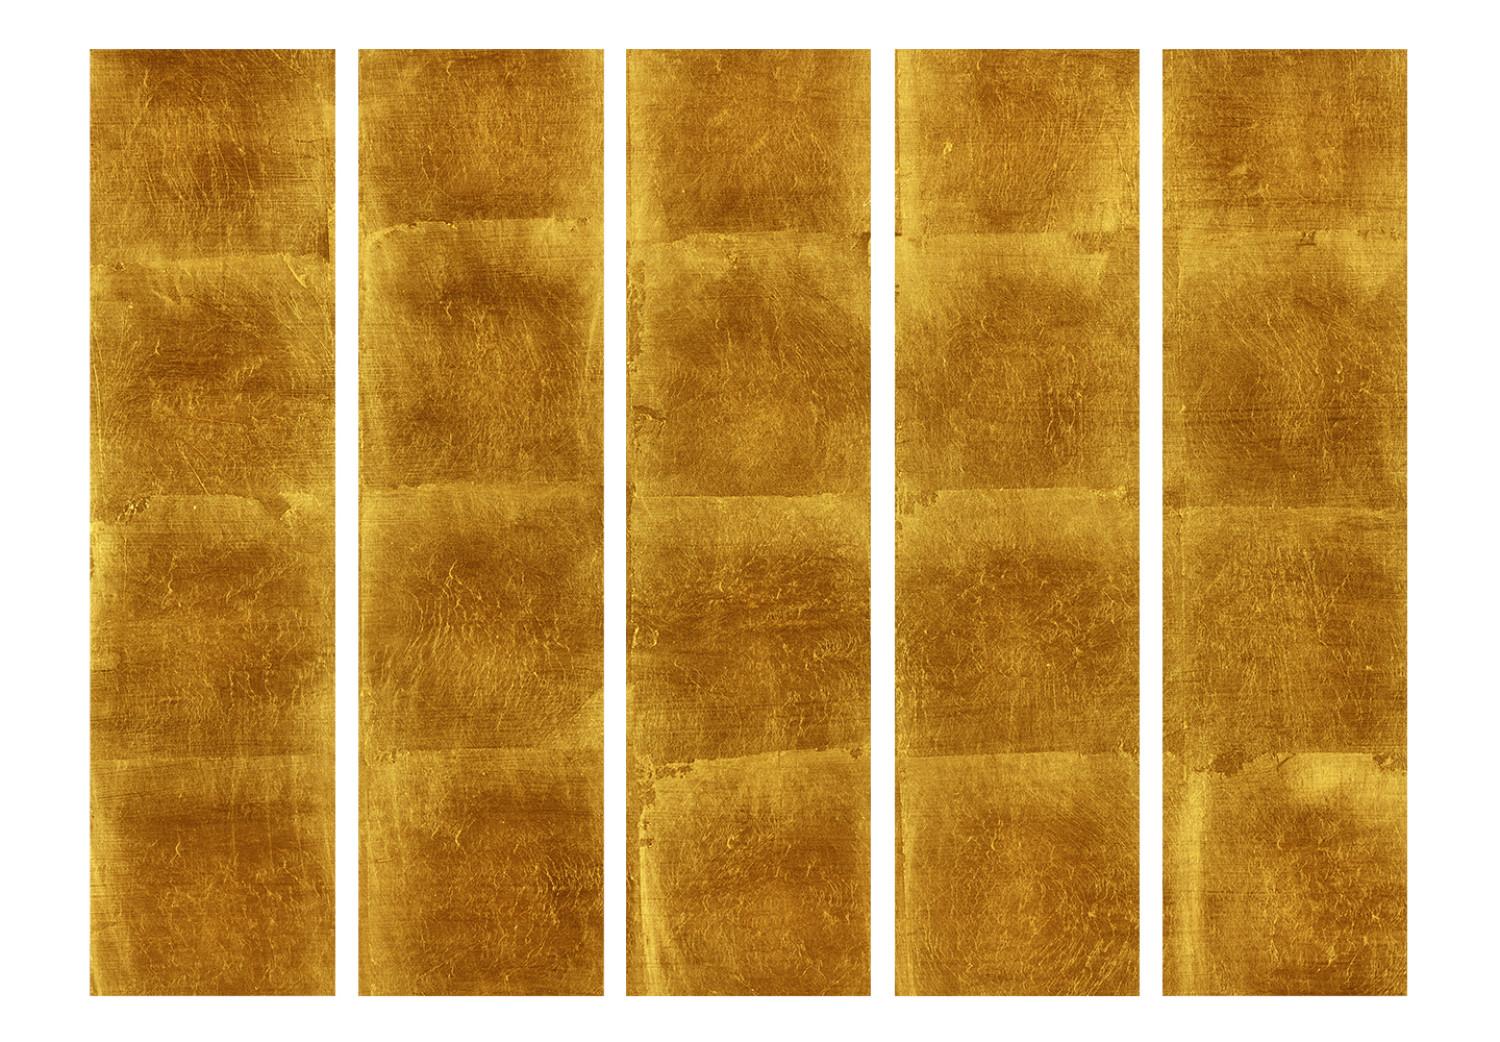 Biombo original Golden Cage II: textura dorada con tonos más oscuros